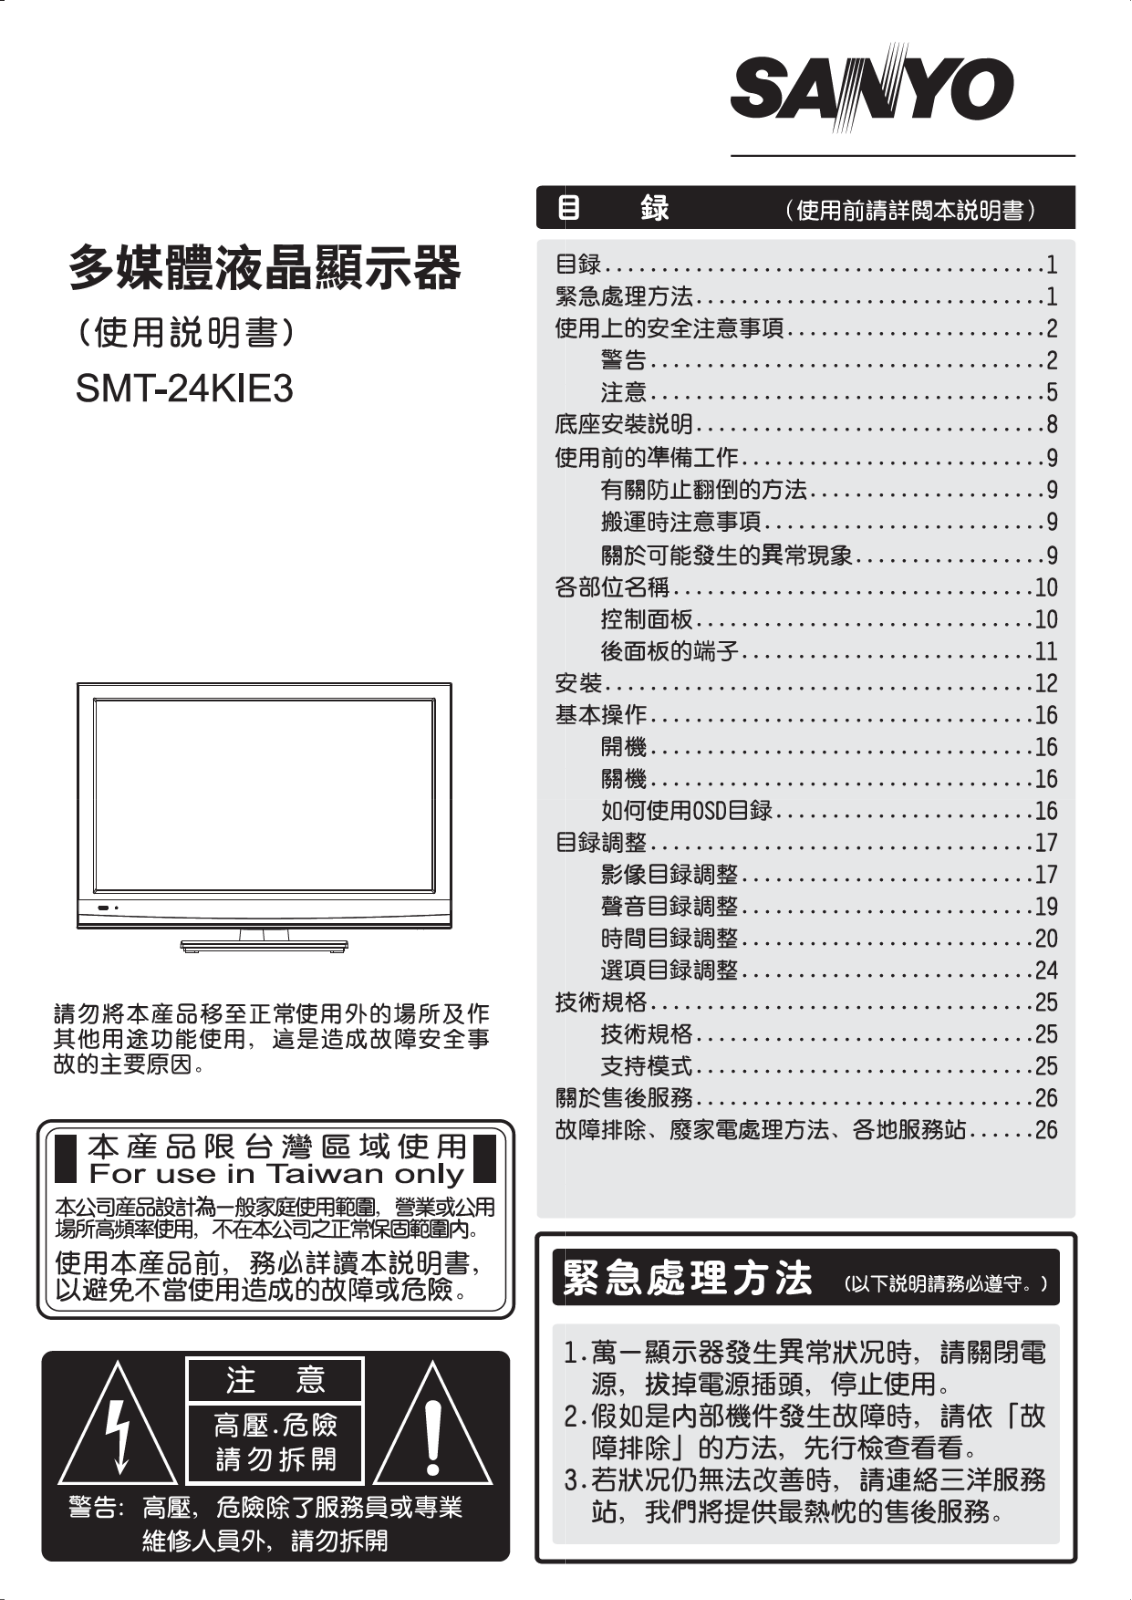 SANYO SMT-24KIE3 User Manual